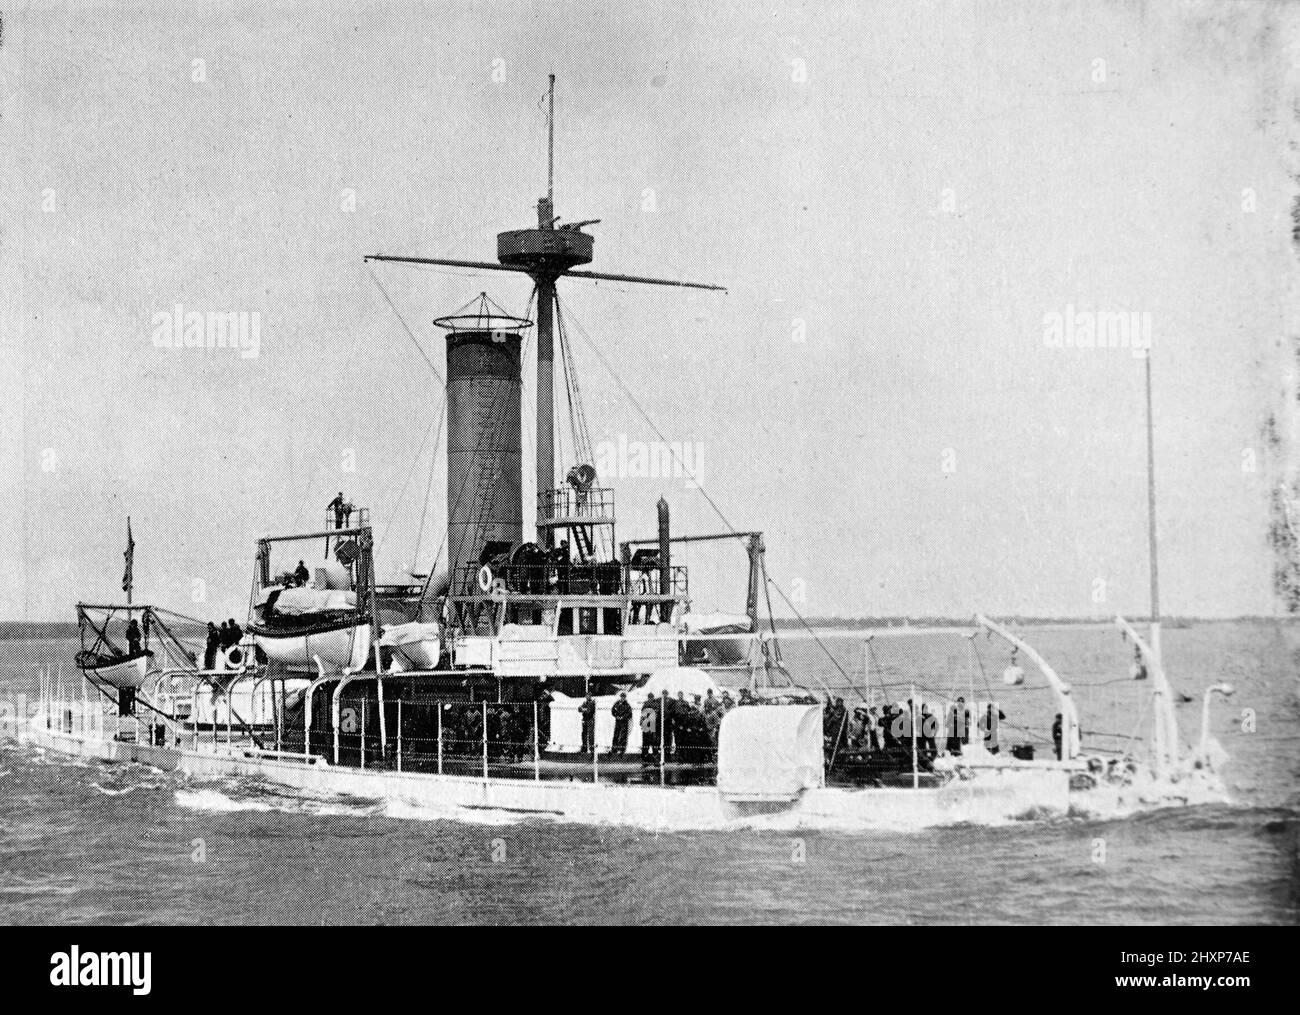 Monitor de EE.UU. Maintonomoh. Fotografía en blanco y negro tomada alrededor de 1890s Foto de stock